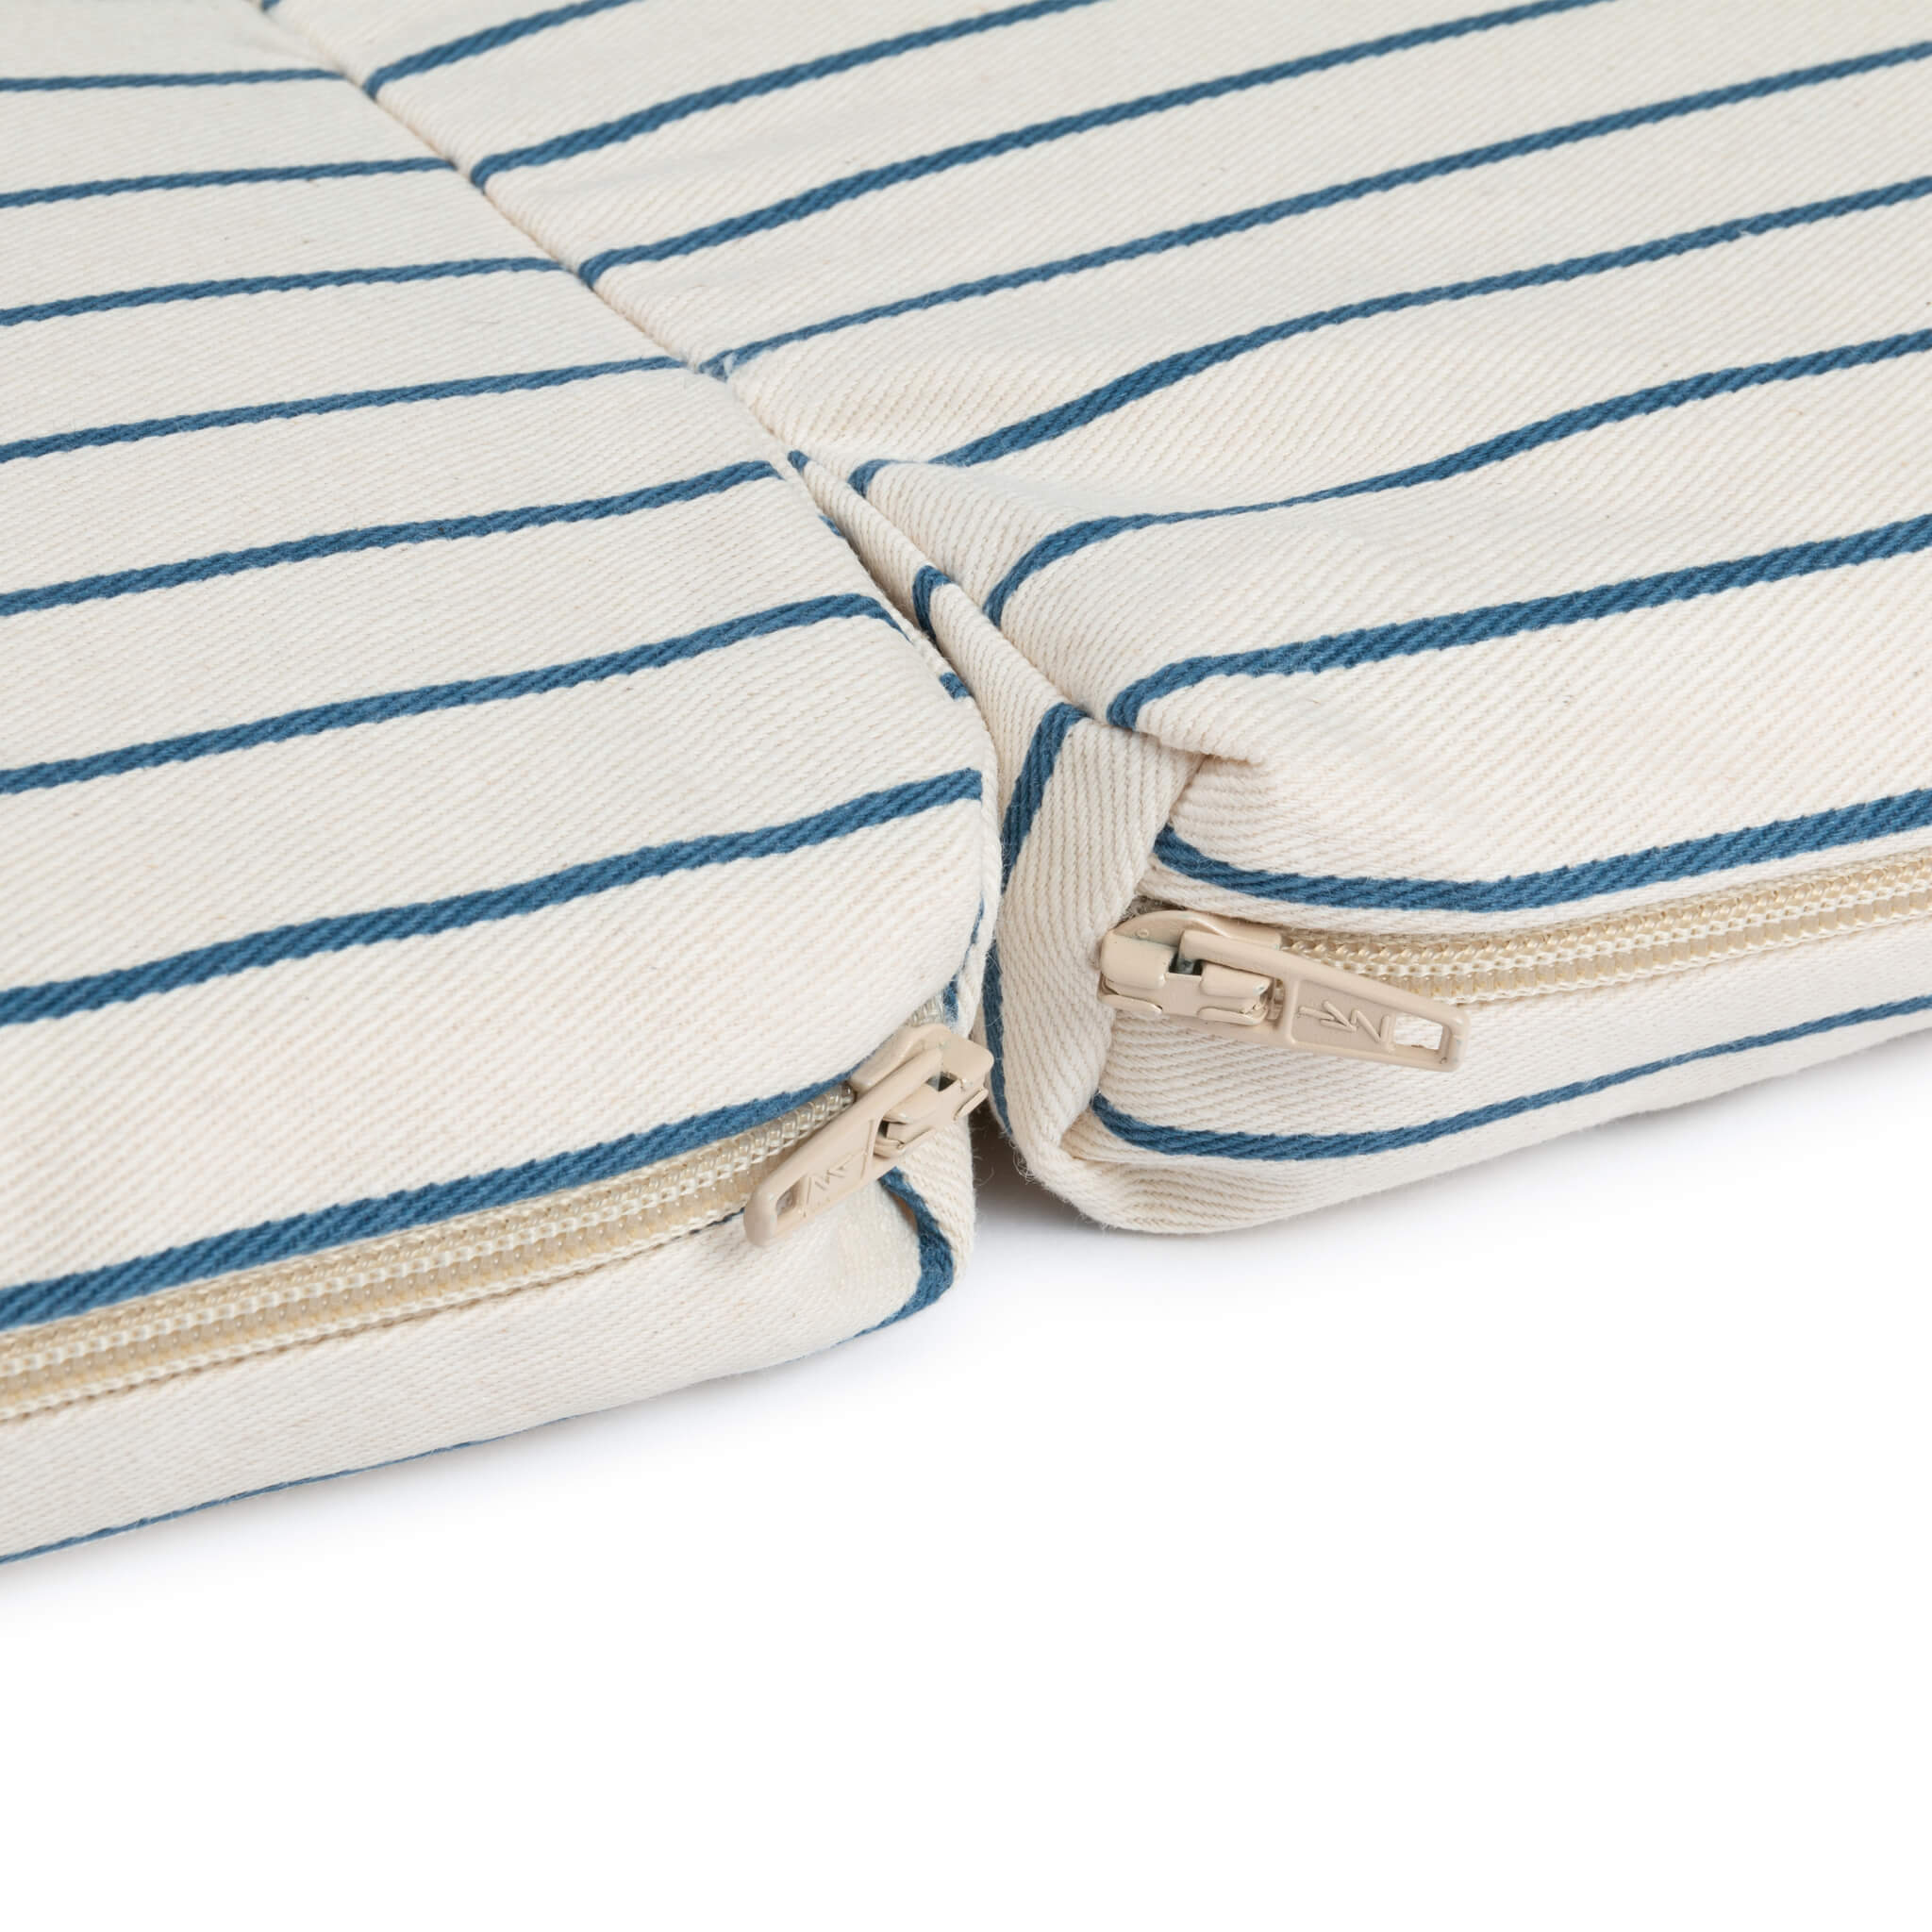 Nobodinoz Bebop Foldable Mattress in Blue Stripes Details